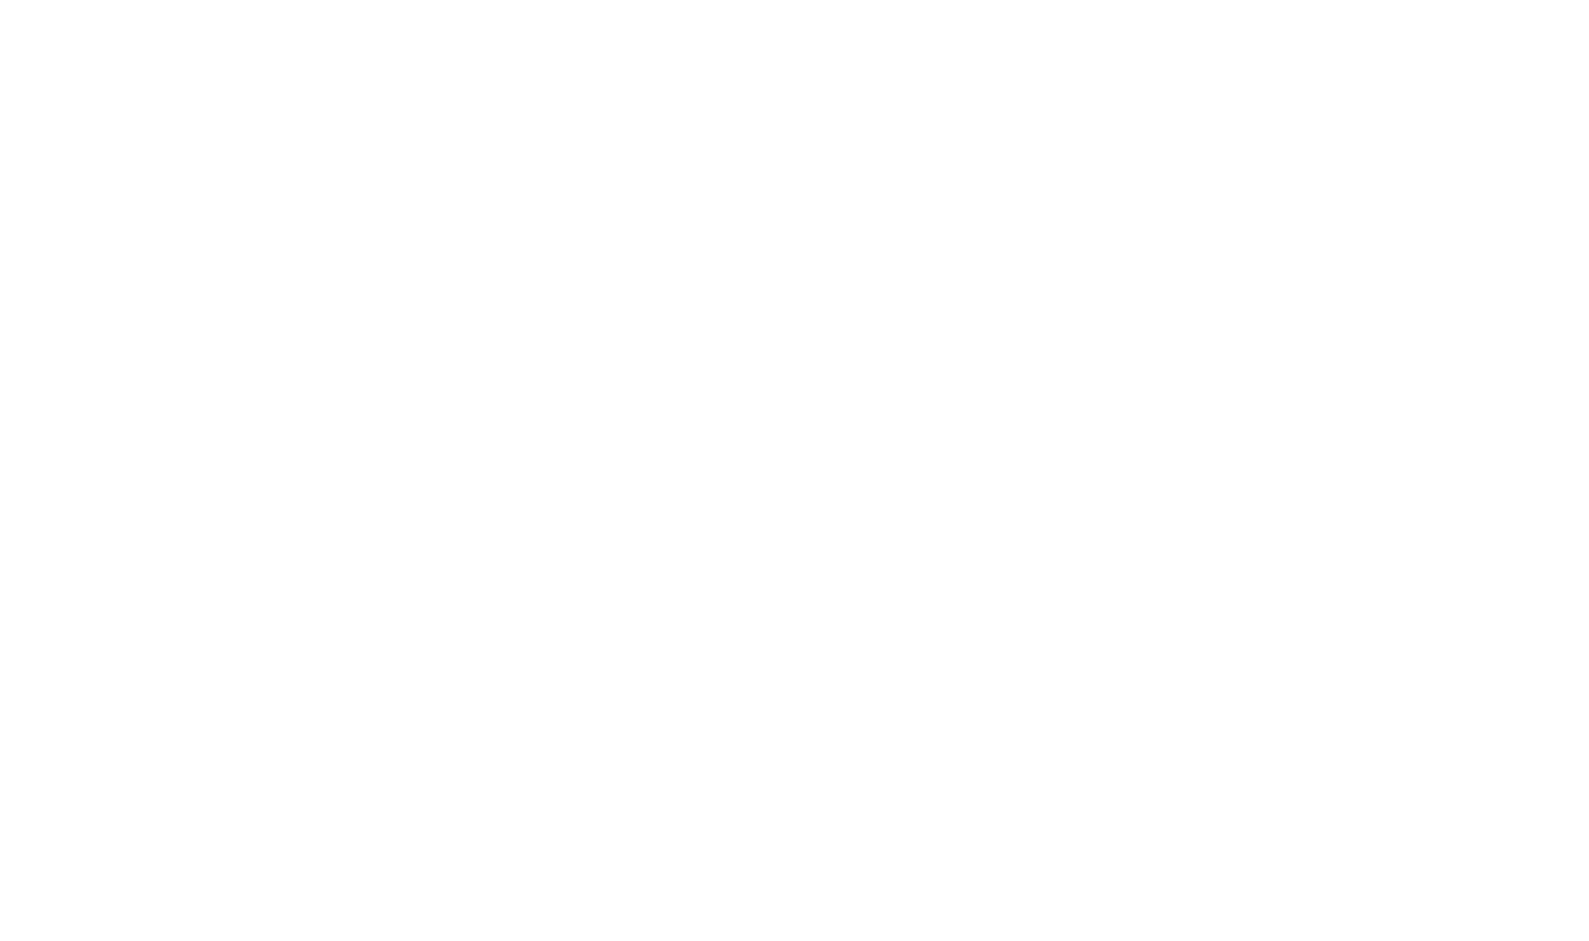 Generali logo for dark backgrounds (transparent PNG)